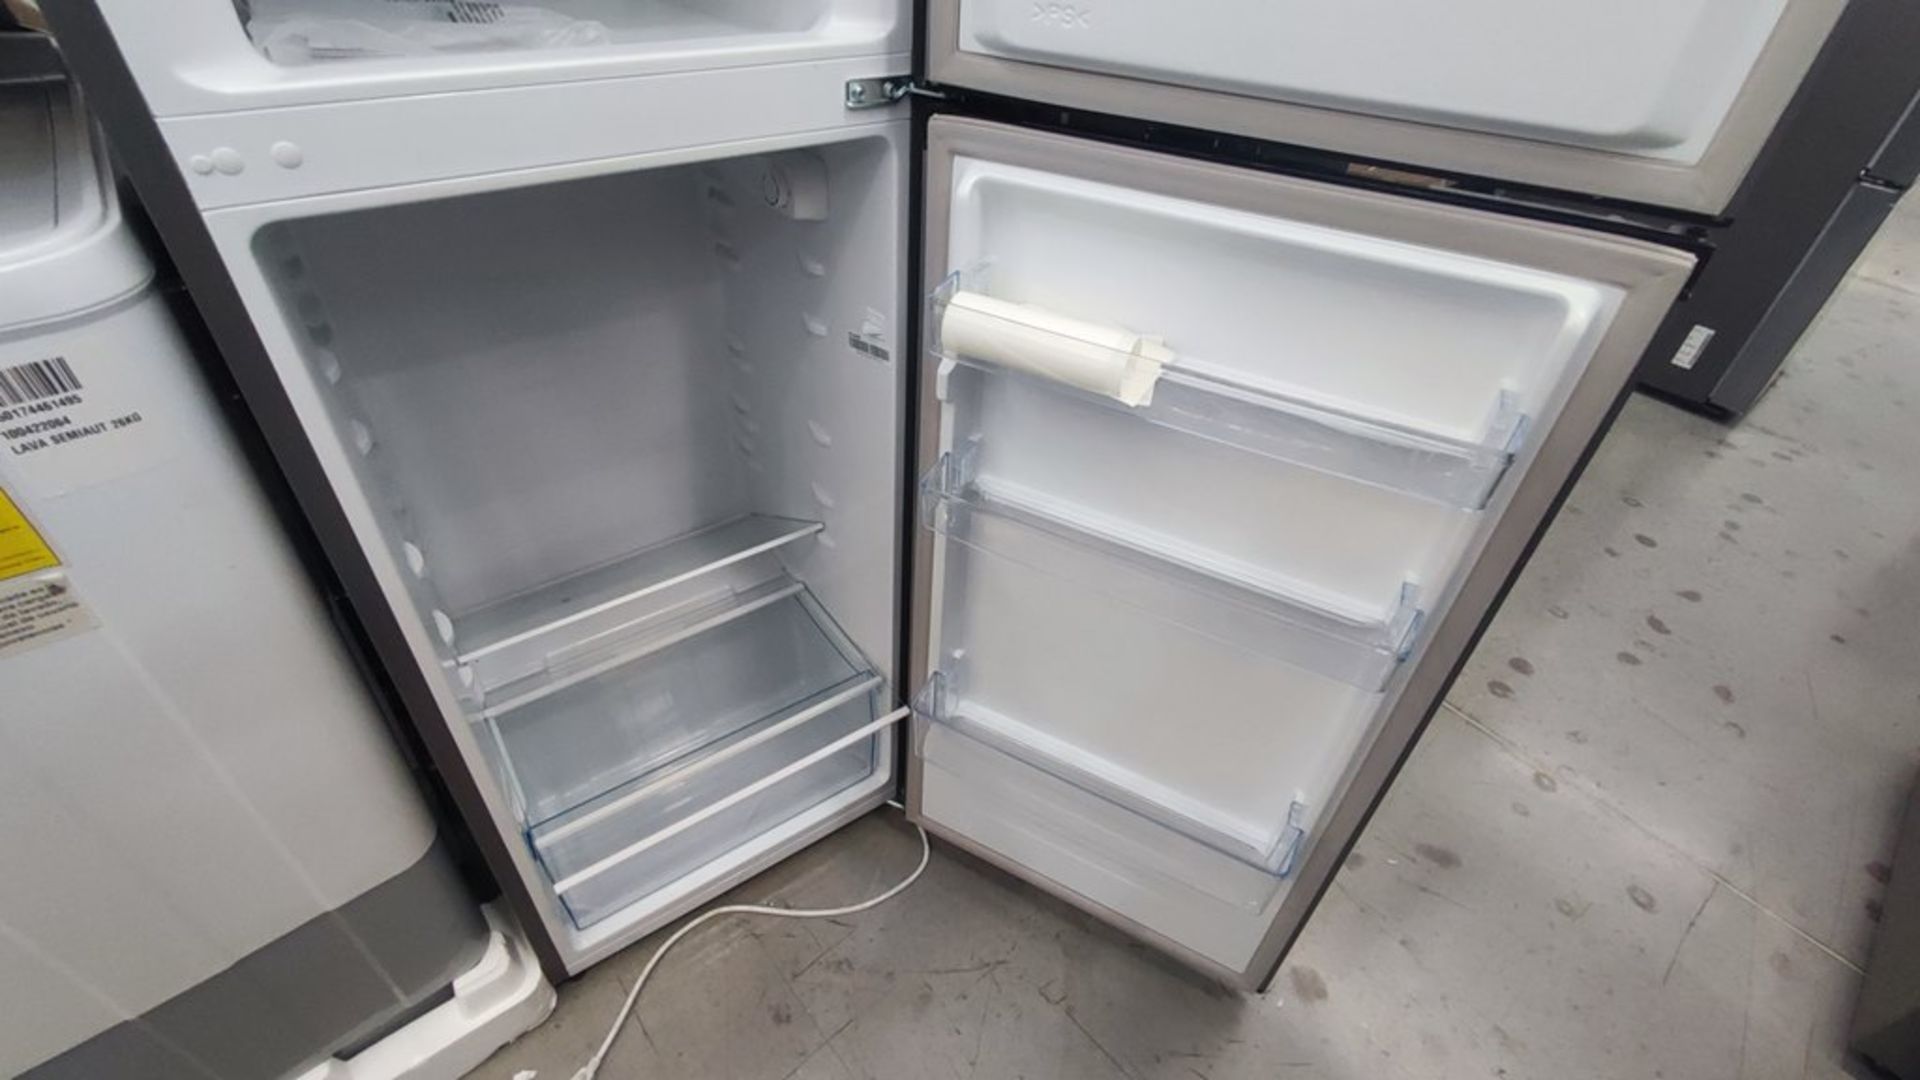 Lote de 2 Refrigeradores contiene: 1 Refrigerador Marca Mabe, Modelo RME360FD, No de serie 2206B511 - Image 5 of 11